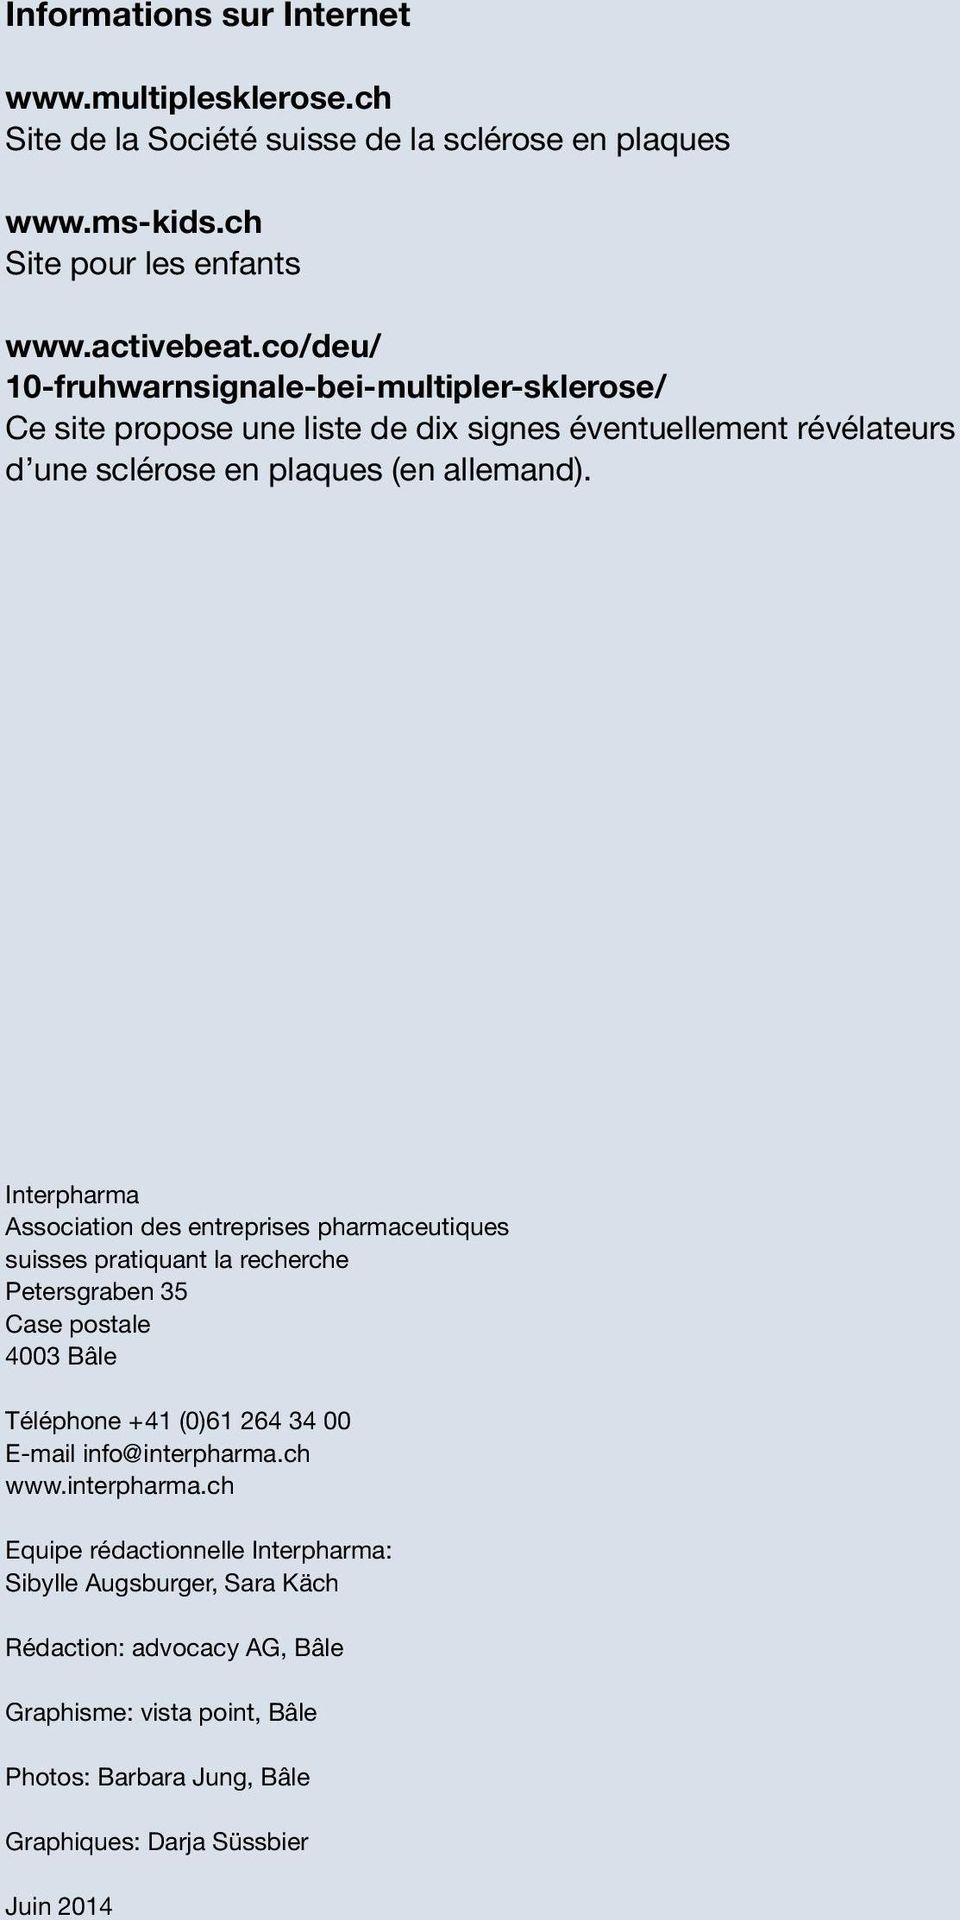 Interpharma Association des entreprises pharmaceutiques suisses pratiquant la recherche Petersgraben 35 Case postale 4003 Bâle Téléphone +41 (0)61 264 34 00 E-mail